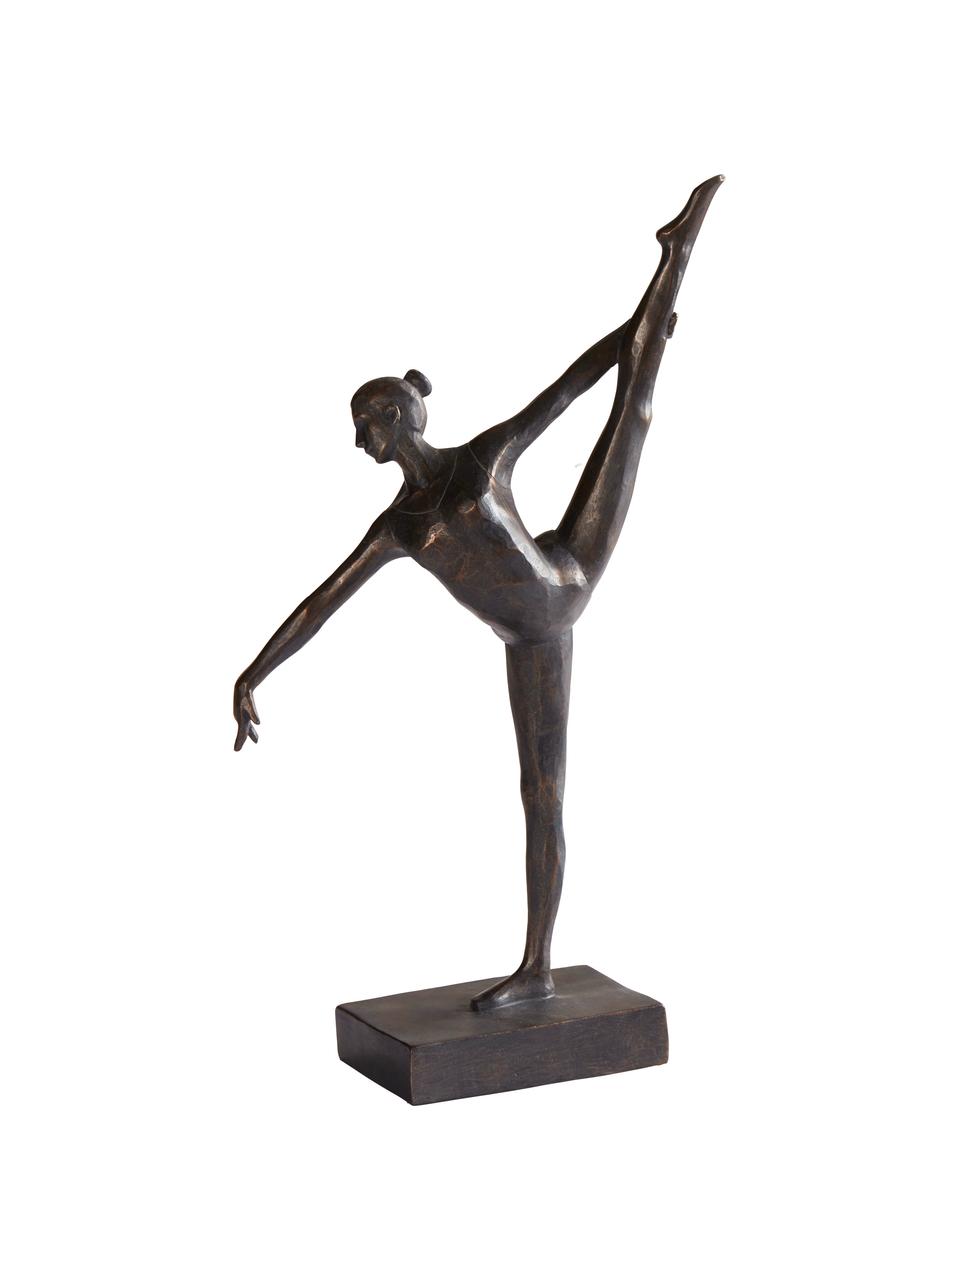 Dekoracja z antycznym wykończeniem Dancer, Tworzywo sztuczne o wyglądzie metalu, Czarny, S 17 x W 32 cm